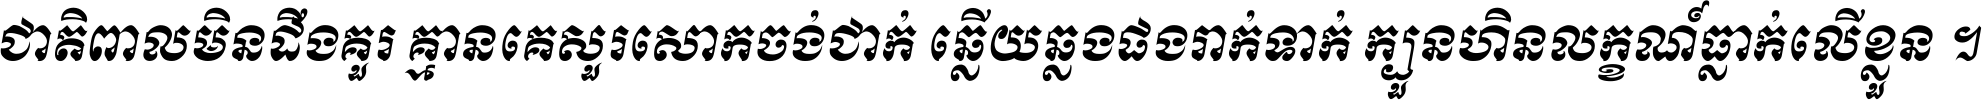 Khmer HUYSAVY R Bold Italic